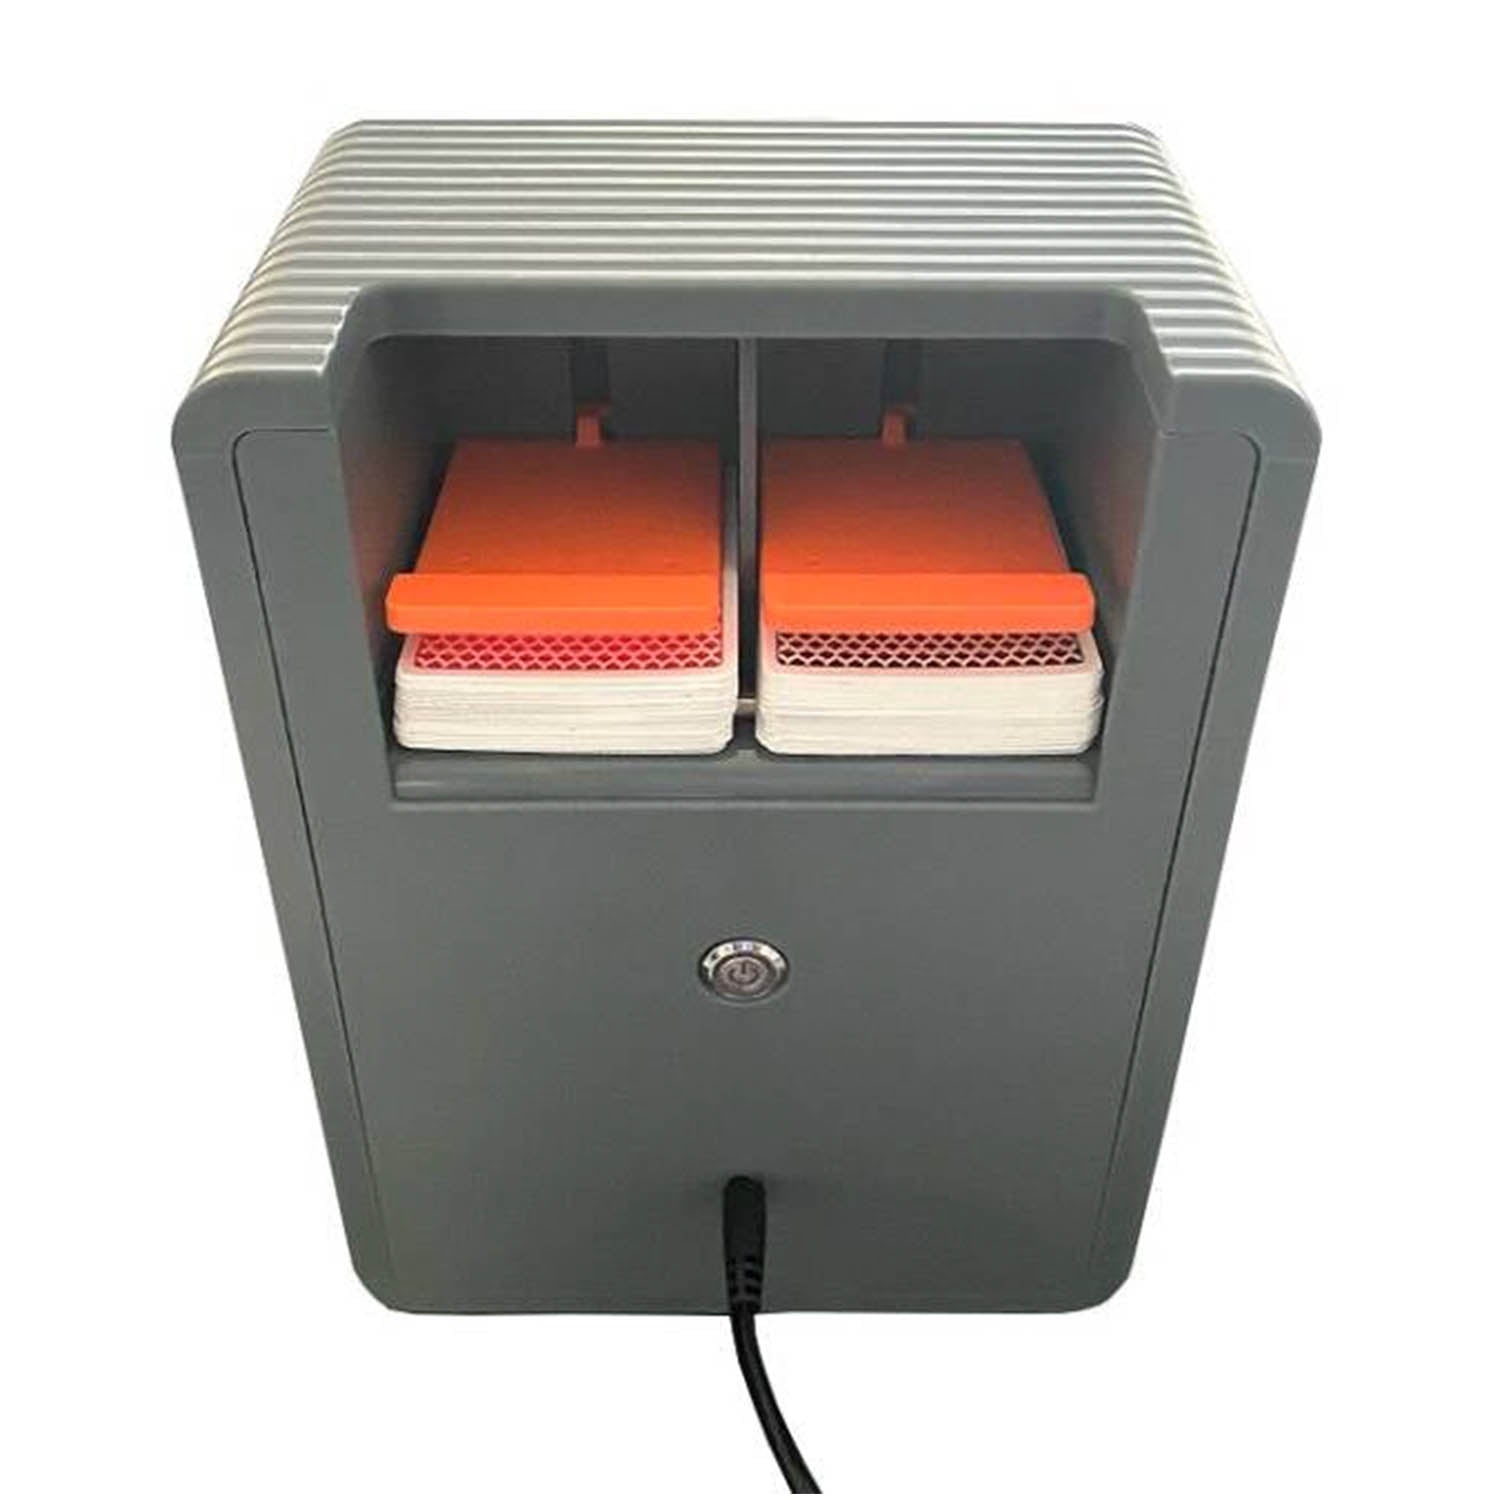 Shuffle Tech MDS-6 Multi-Deck Shuffler - Gaming Blaze